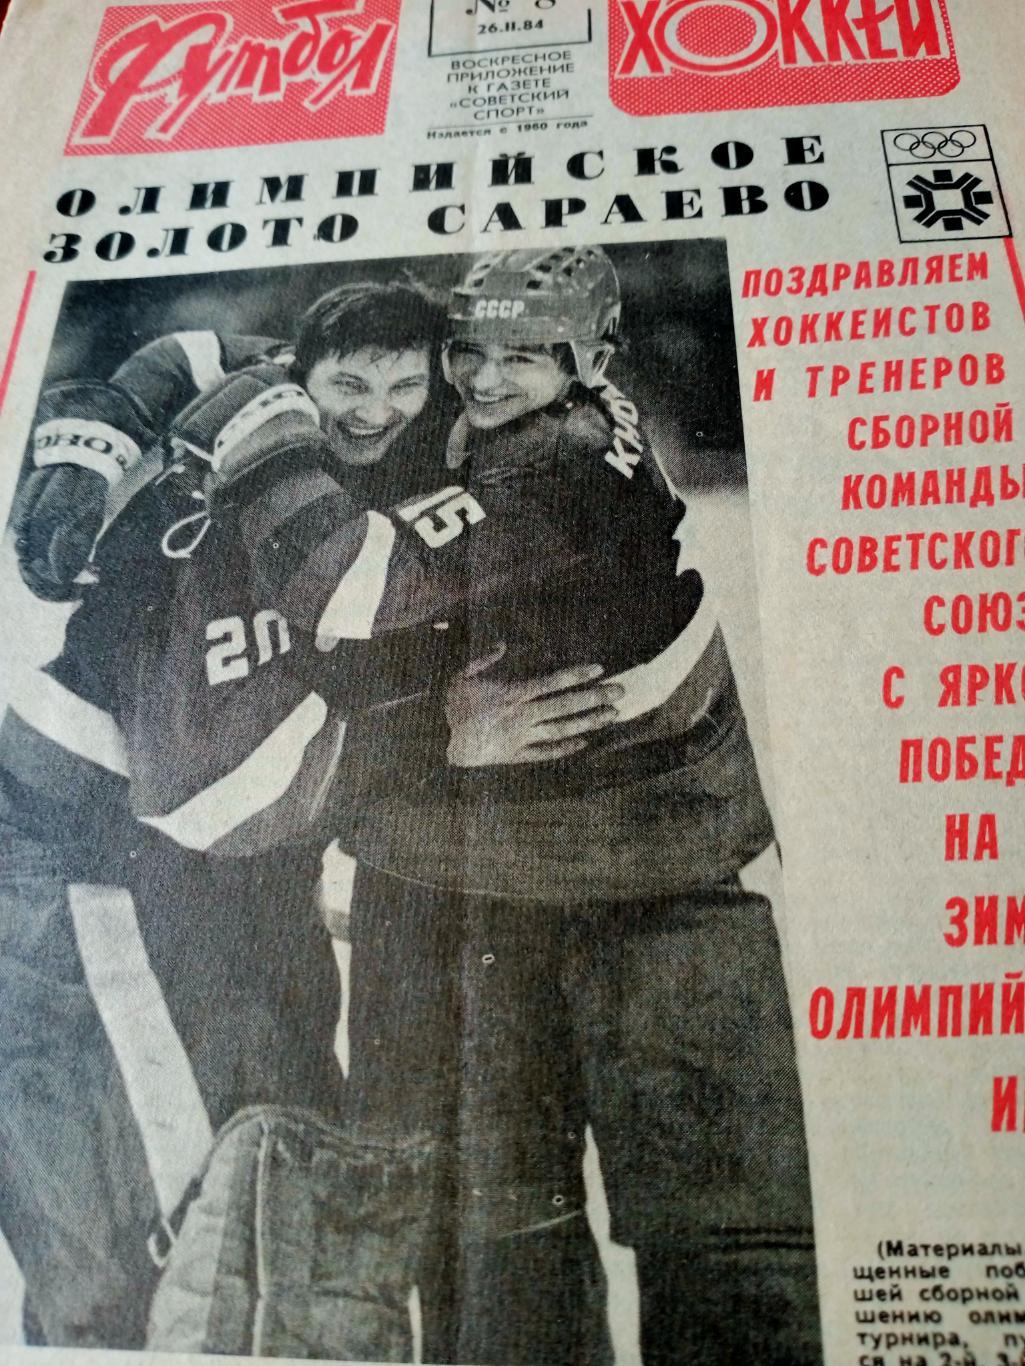 ОЛИМПИЙСКОЕ ЗОЛОТО САРАЕВО! Футбол-Хоккей. 1984 год, № 8